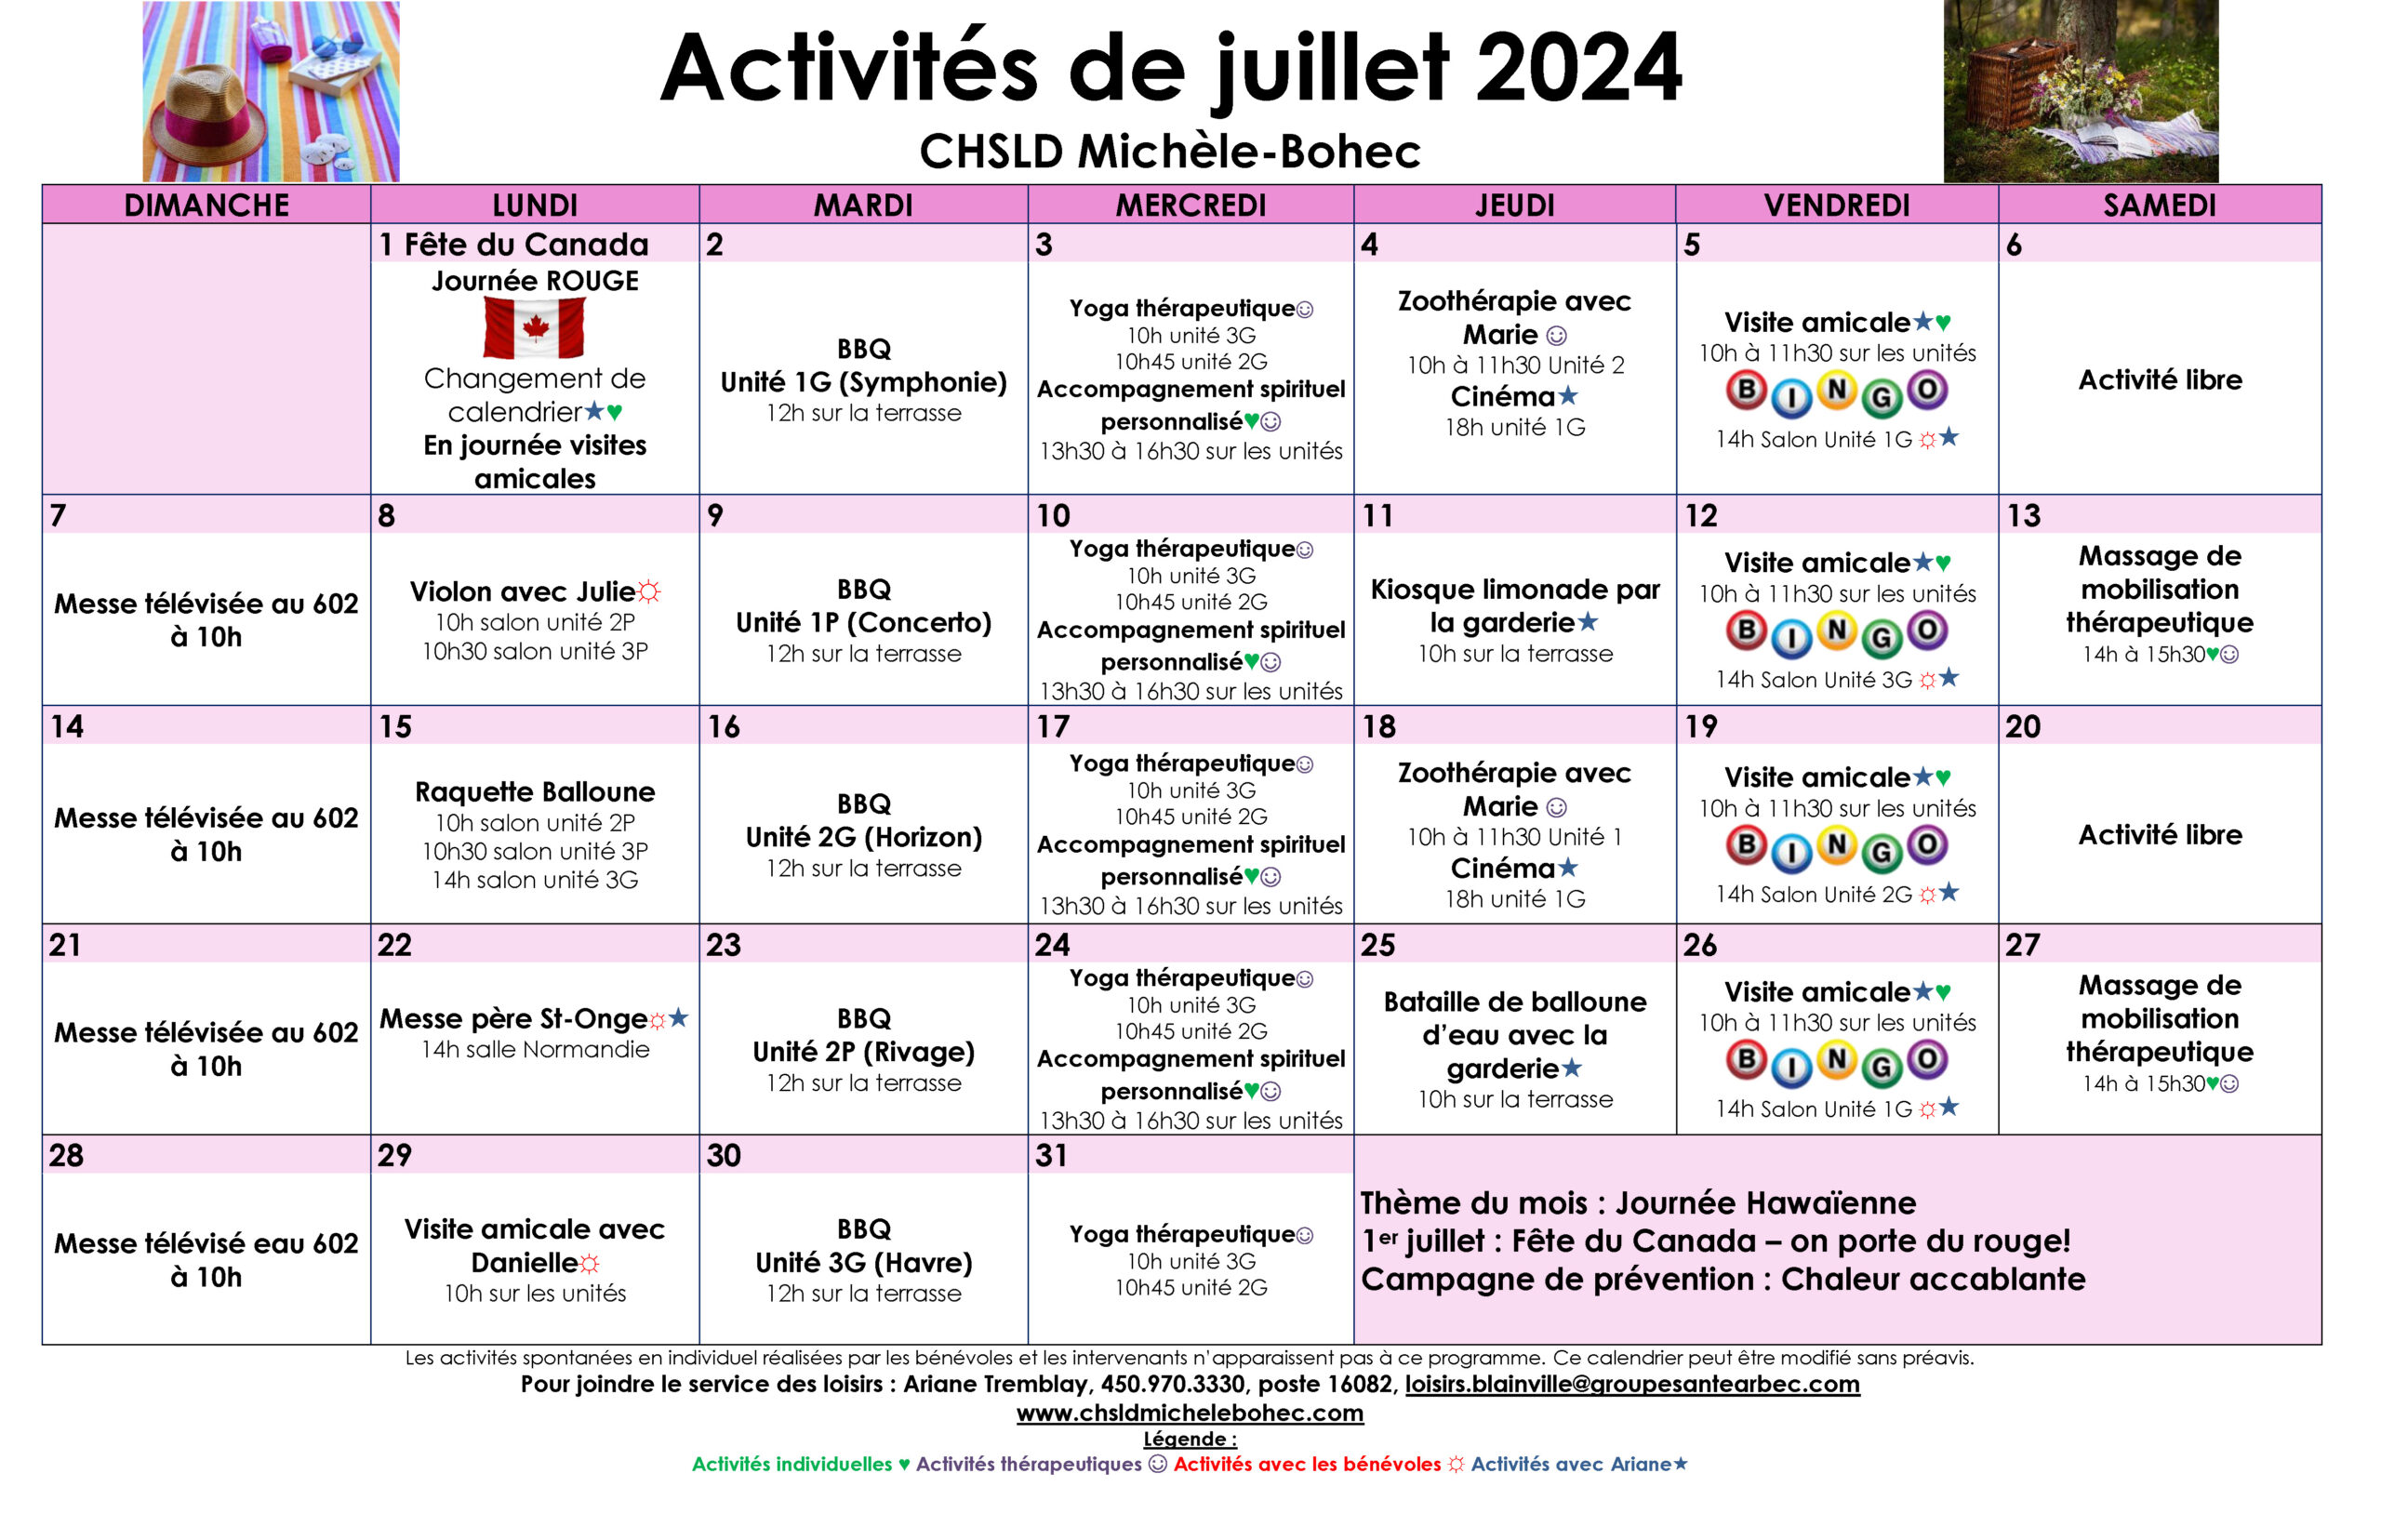 Calendrier des loisirs du mois de juillet 2024 pour les résidents du CHSLD Michèle-Bohec